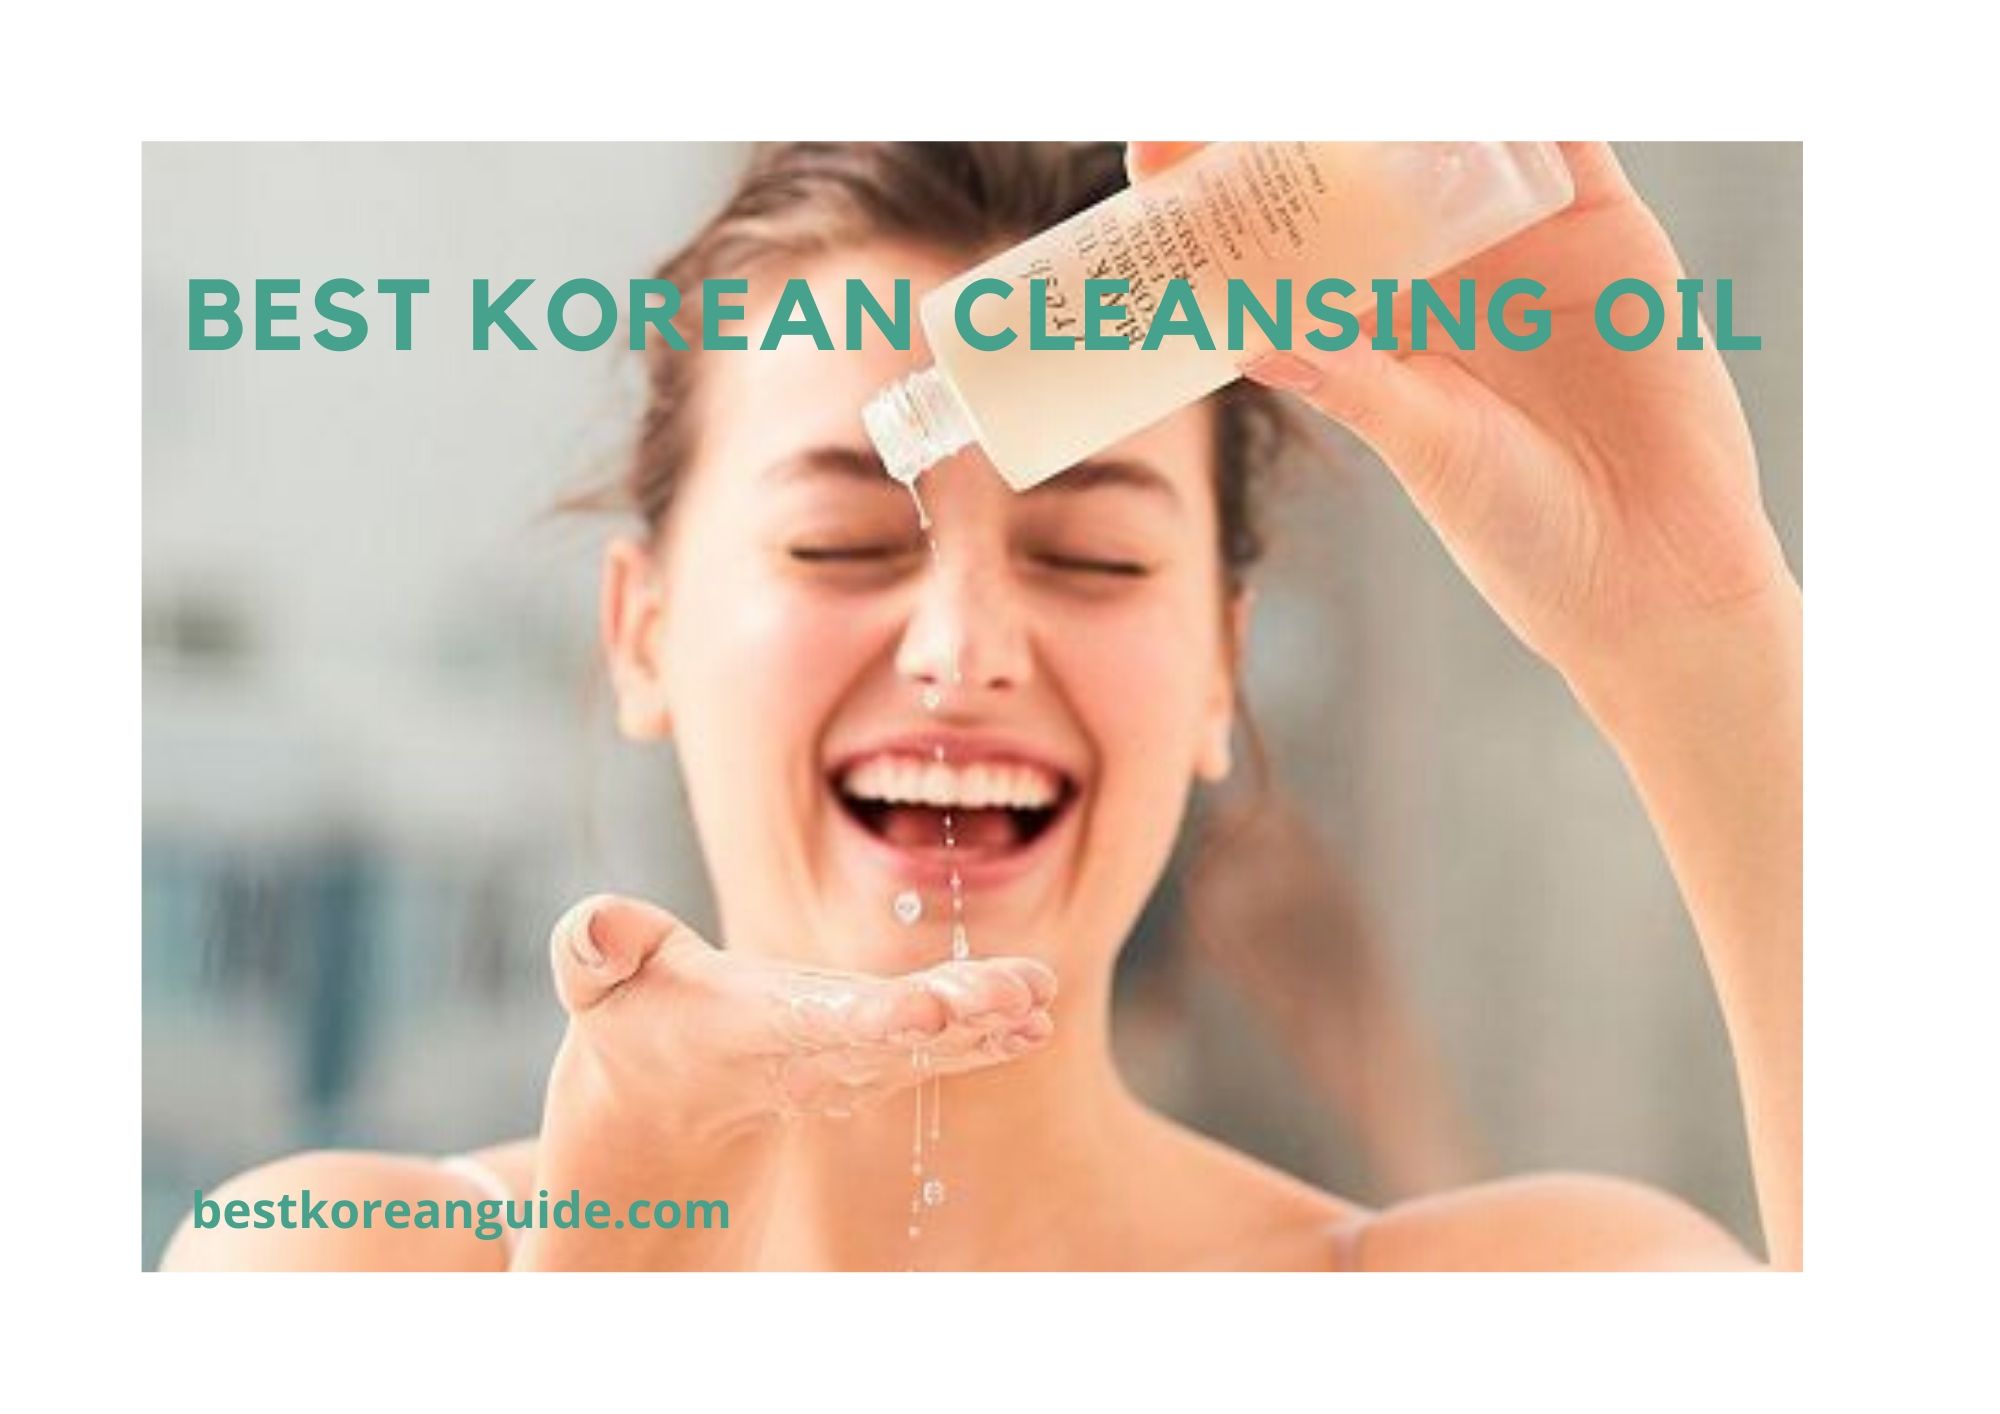 Top 10 Best Korean Cleansing Oil